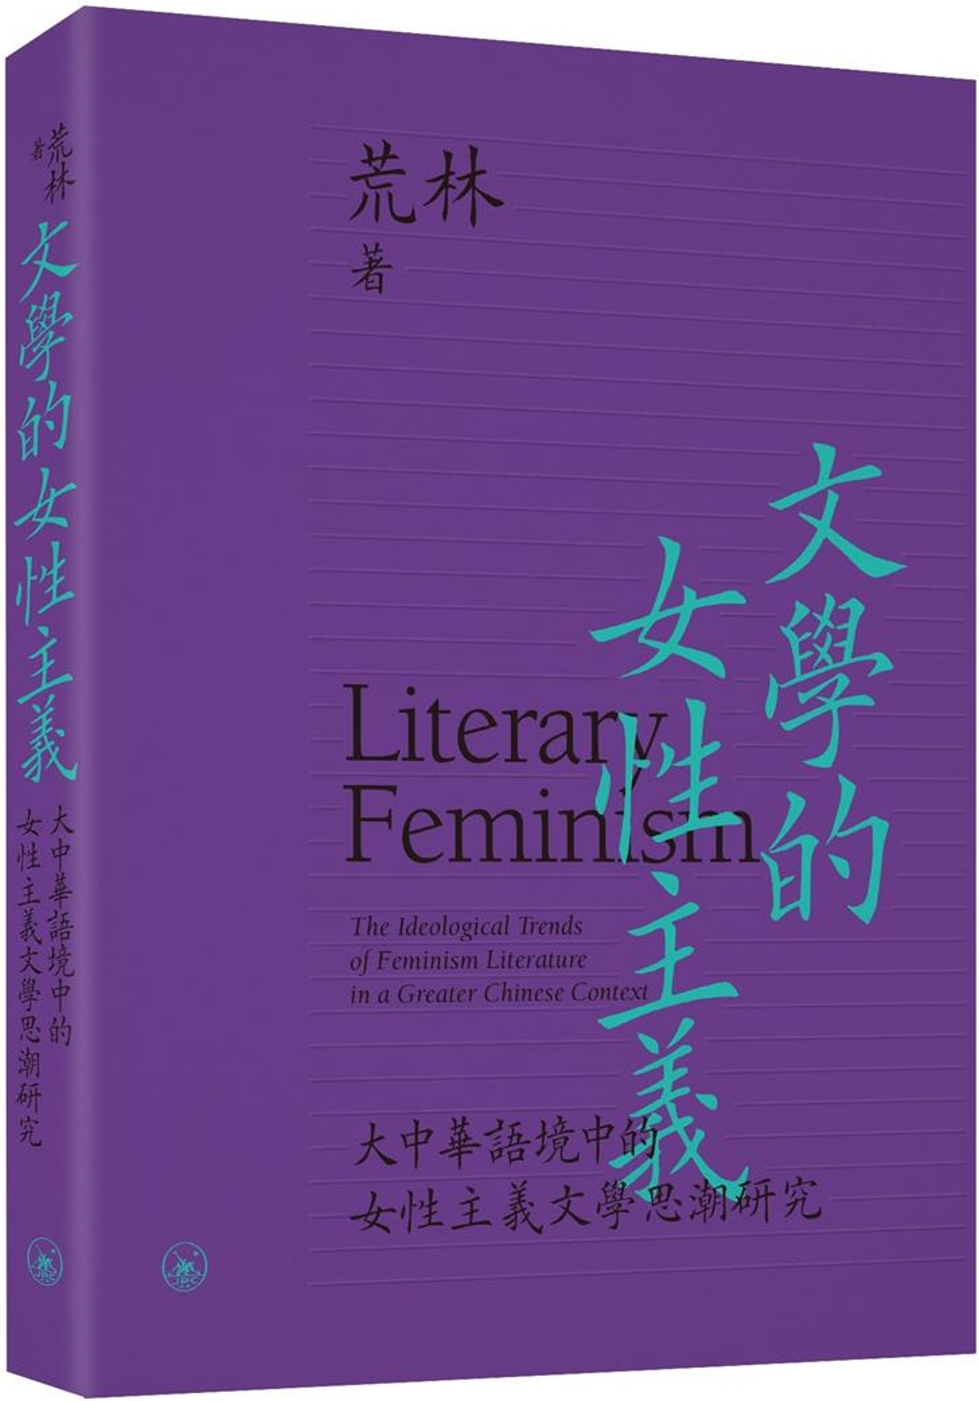 文學的女性主義：大中華語境中的女性主義文學思潮研究